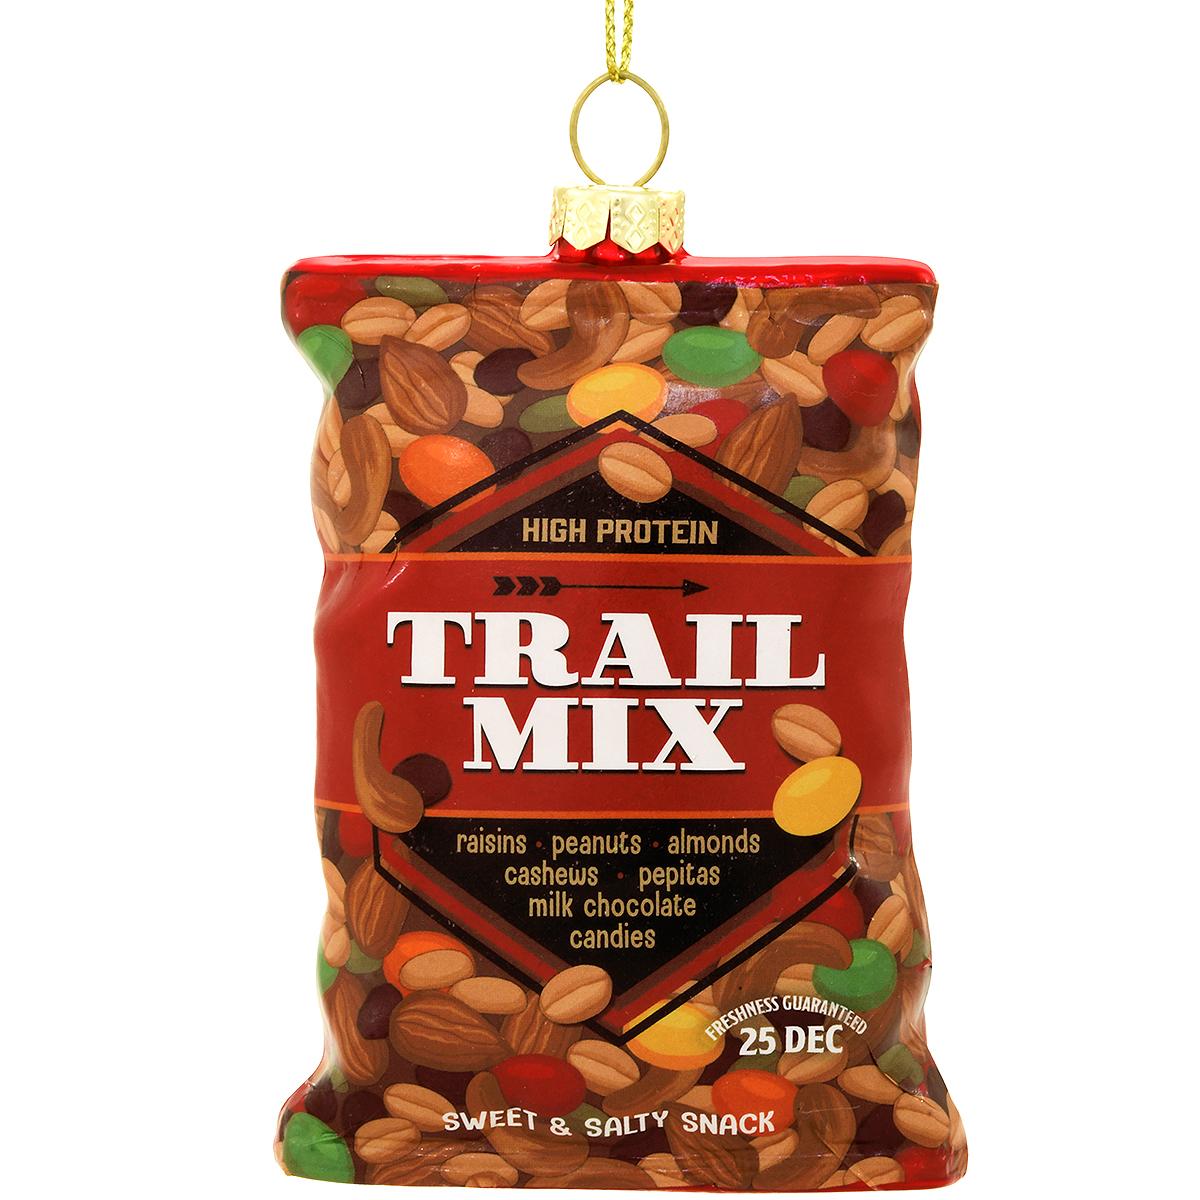 Trail Mix Glass Ornament